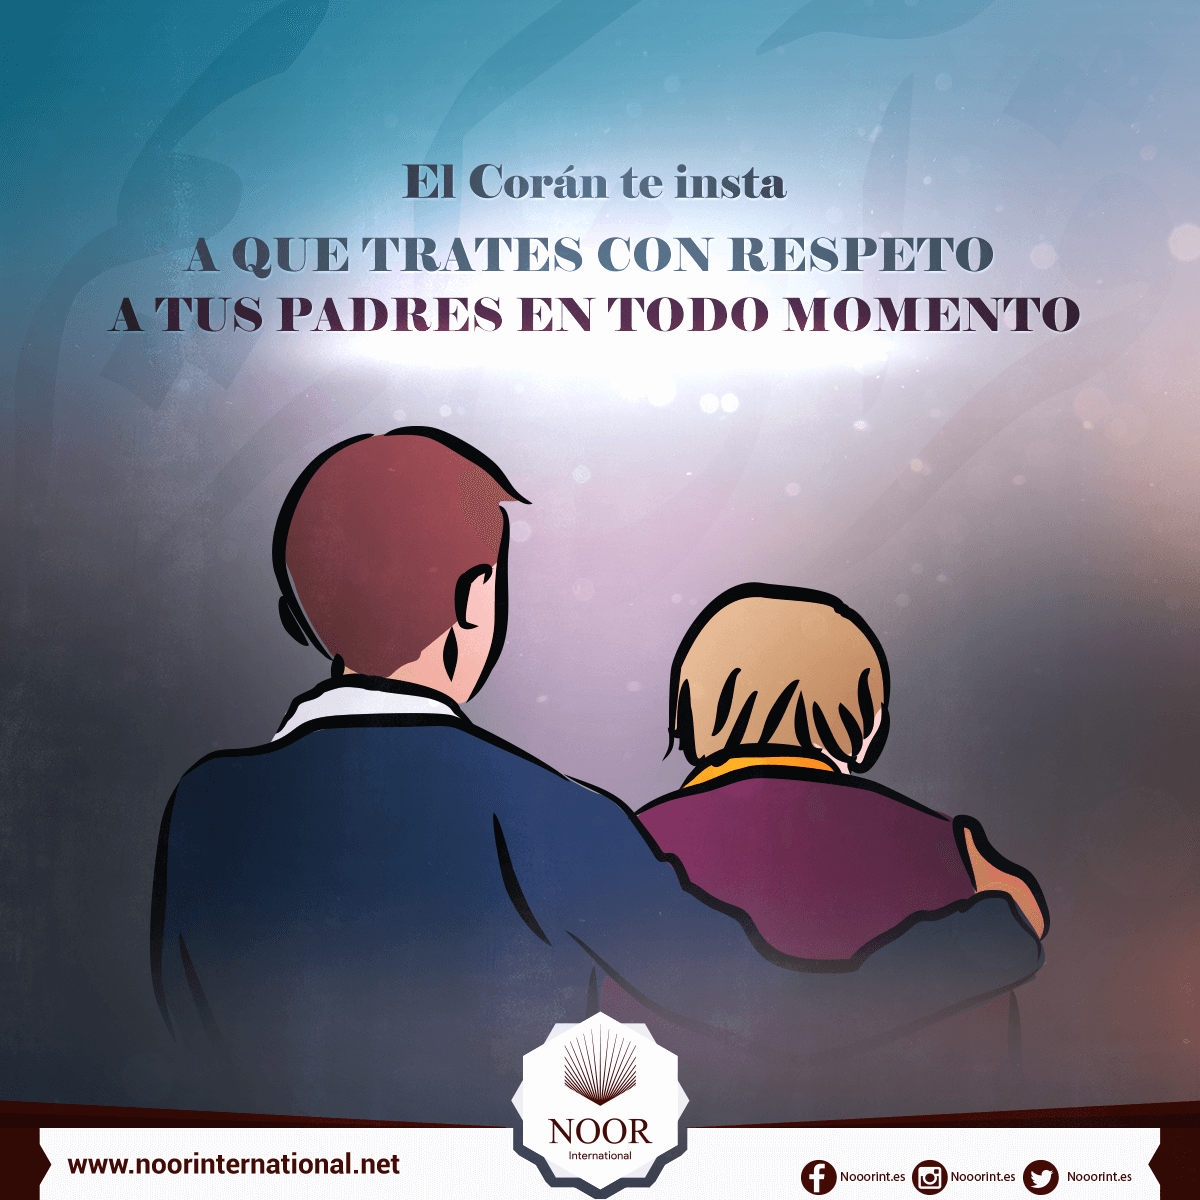 El Corán te insta a que trates con respeto a tus padres en todo momento